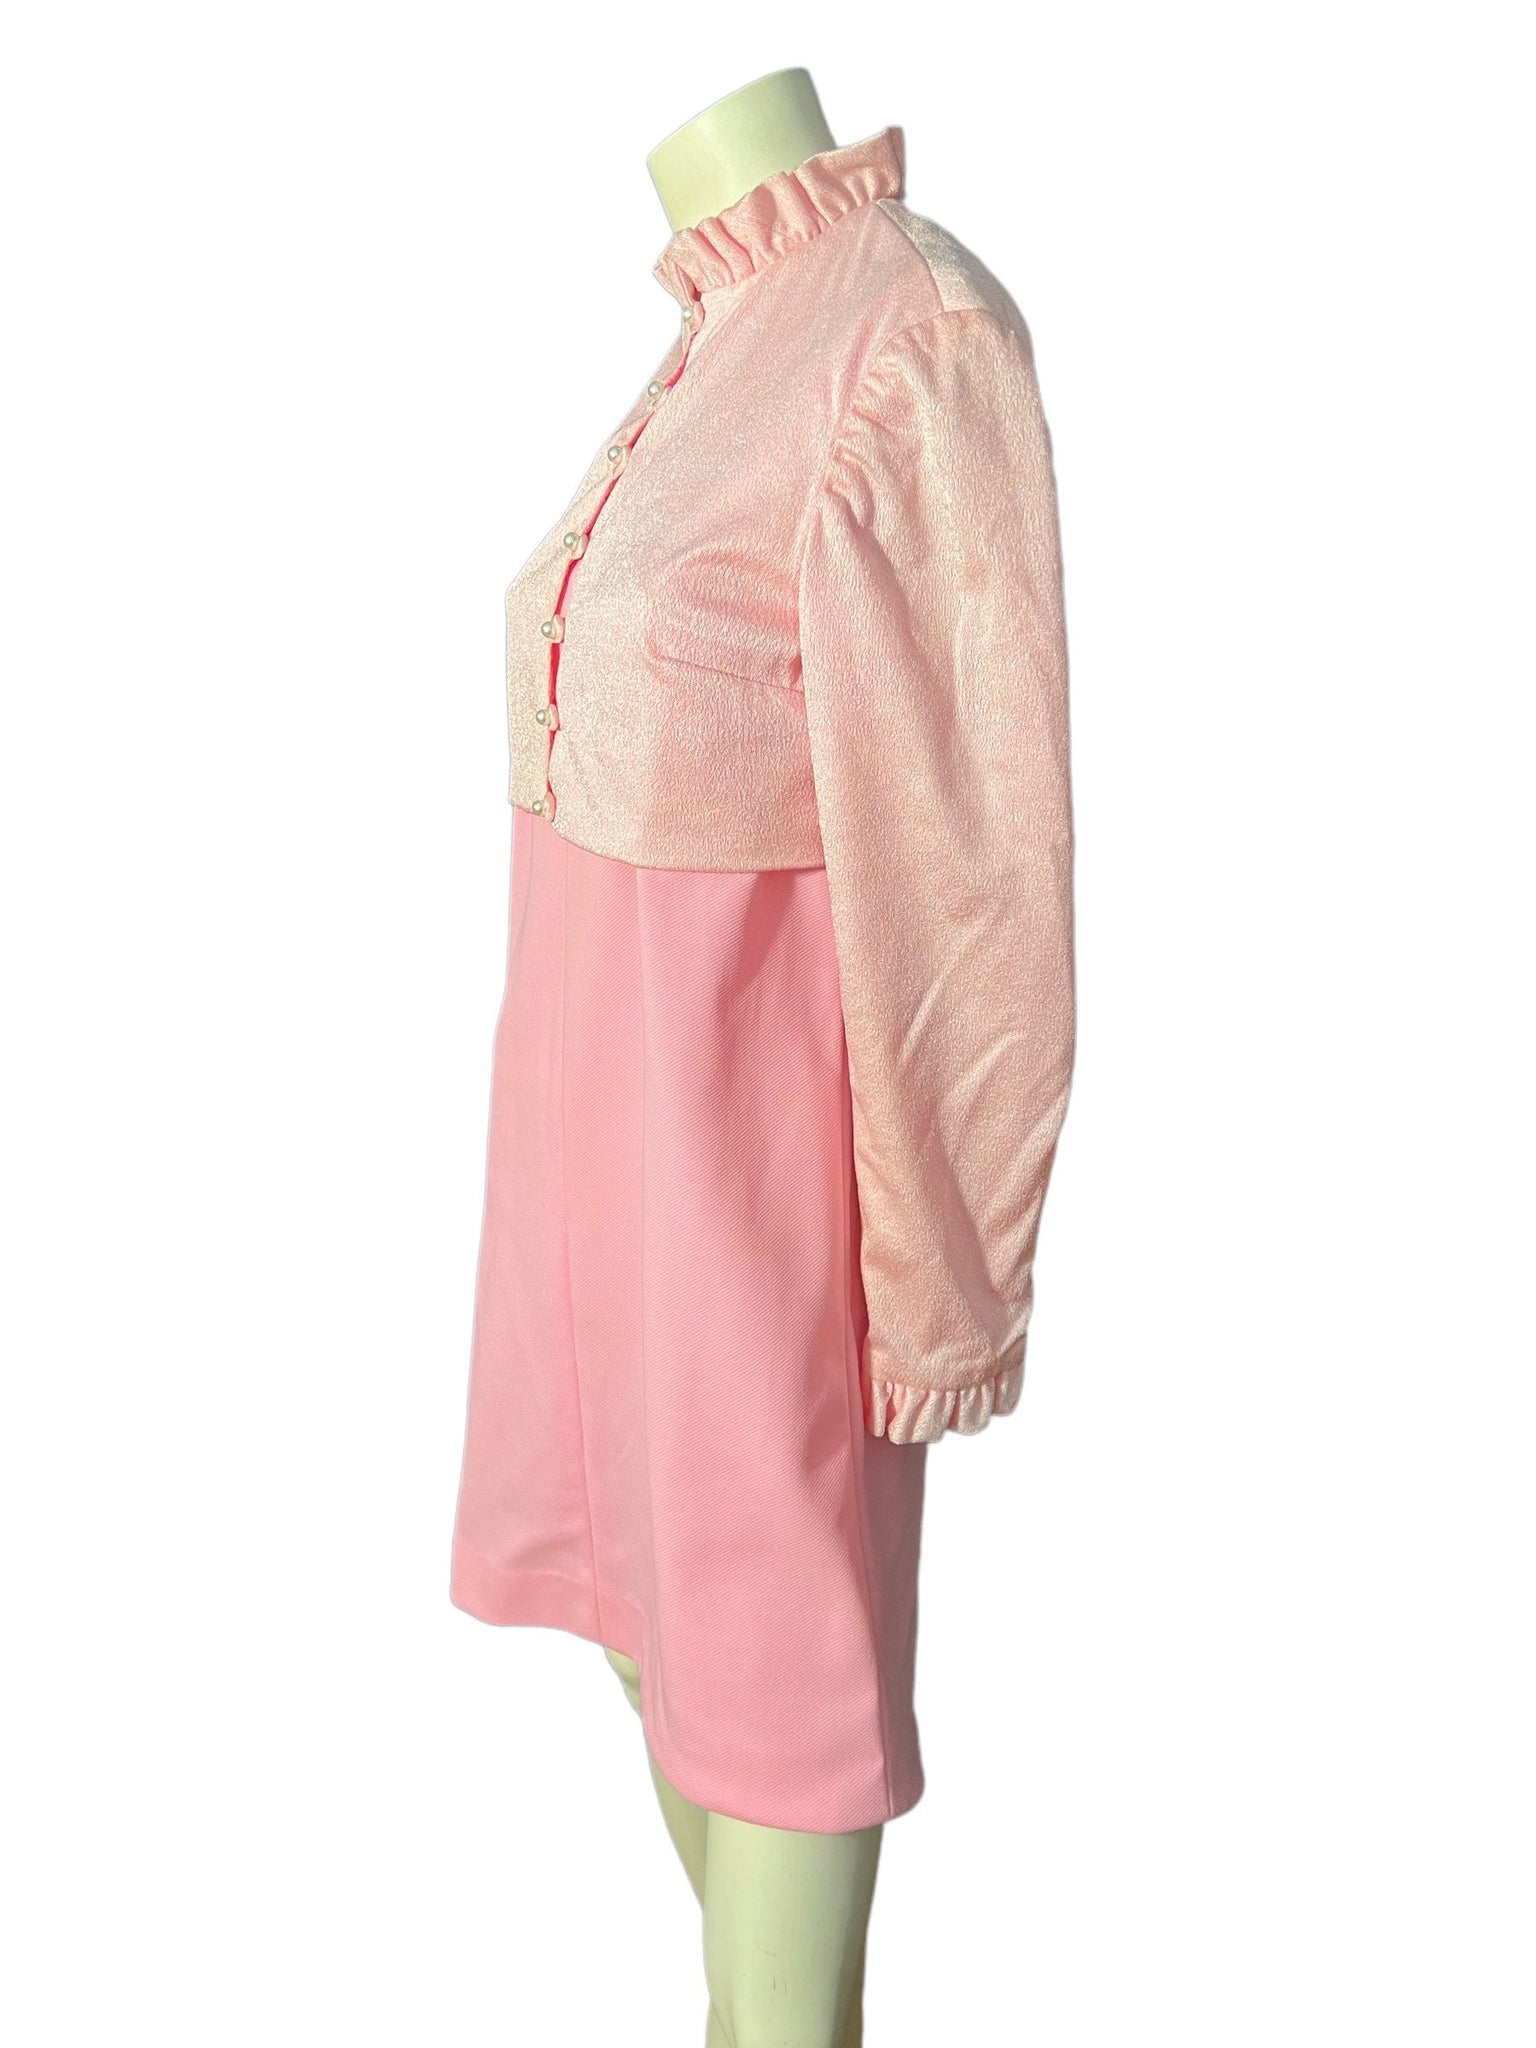 Vintage 70's pink dress & jacket M